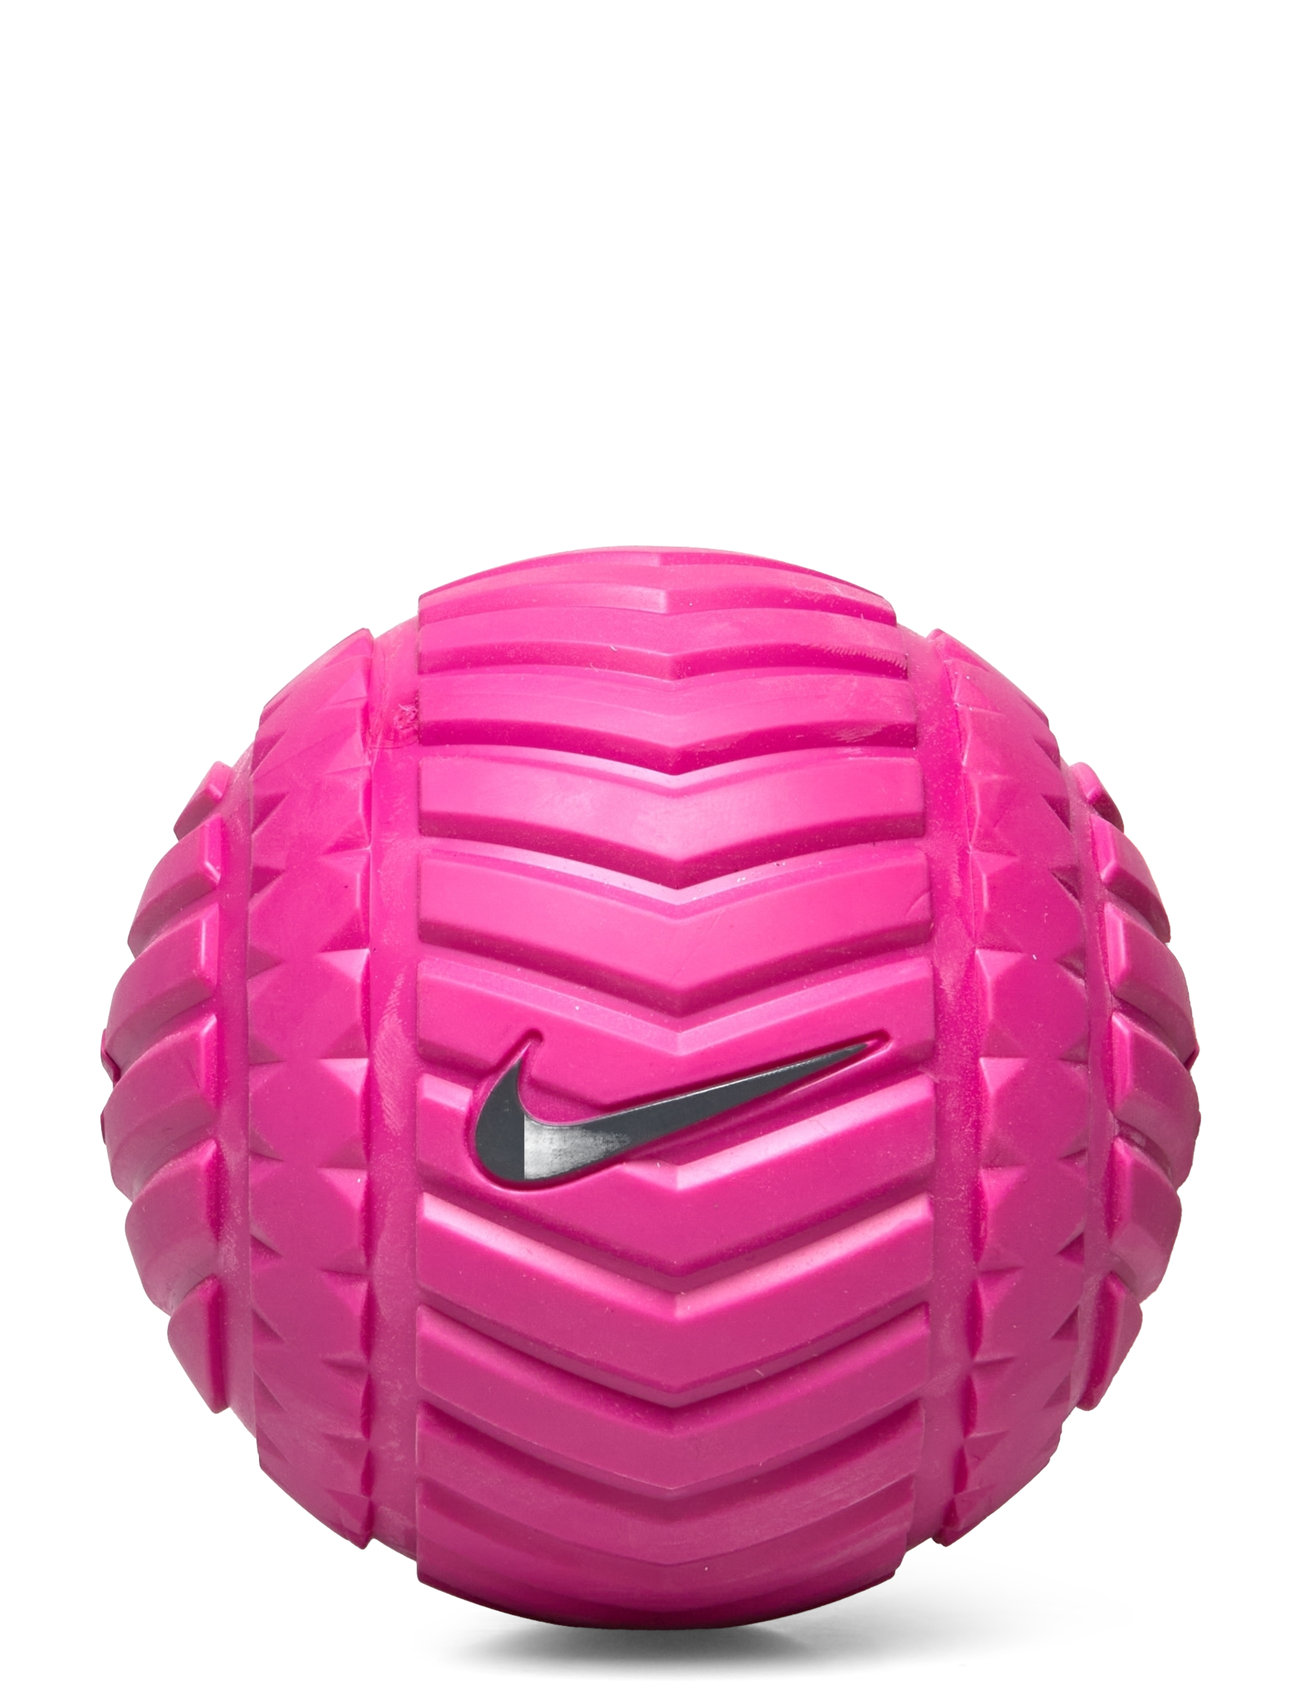 Nike Recovery Ball Sport Sports Equipment Workout Equipment Foam Rolls & Massage Balls Pink NIKE Equipment